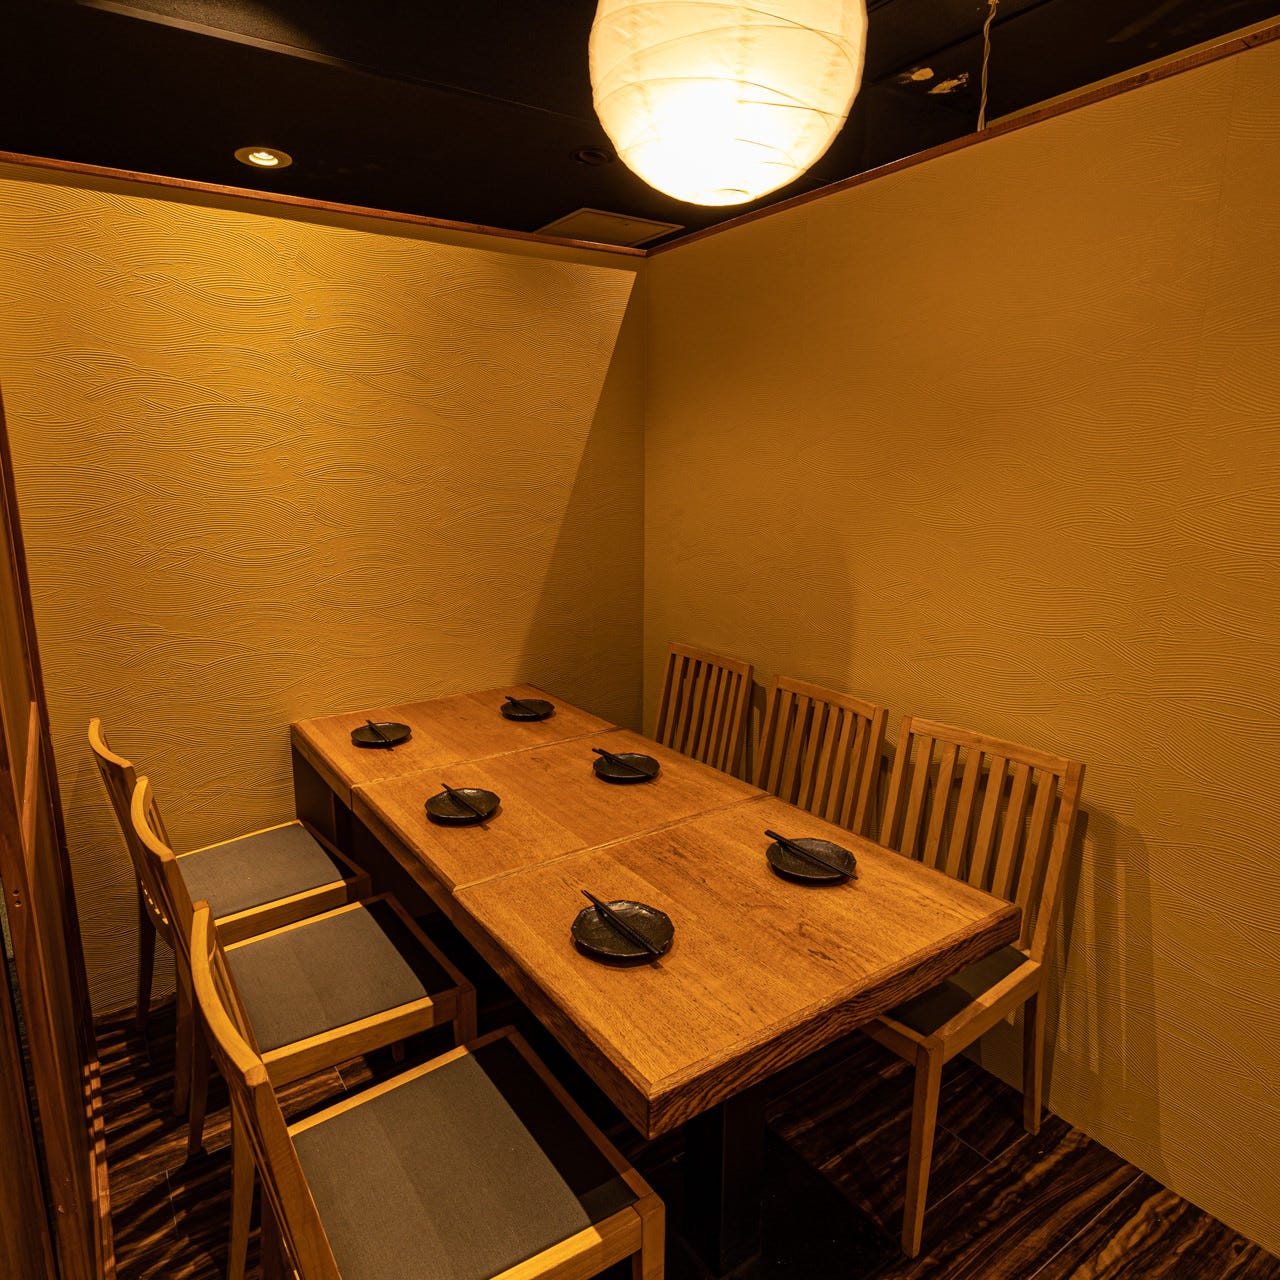 21年 最新グルメ 三越前にある美味しい肉寿司が味わえるお店 レストラン カフェ 居酒屋のネット予約 東京版